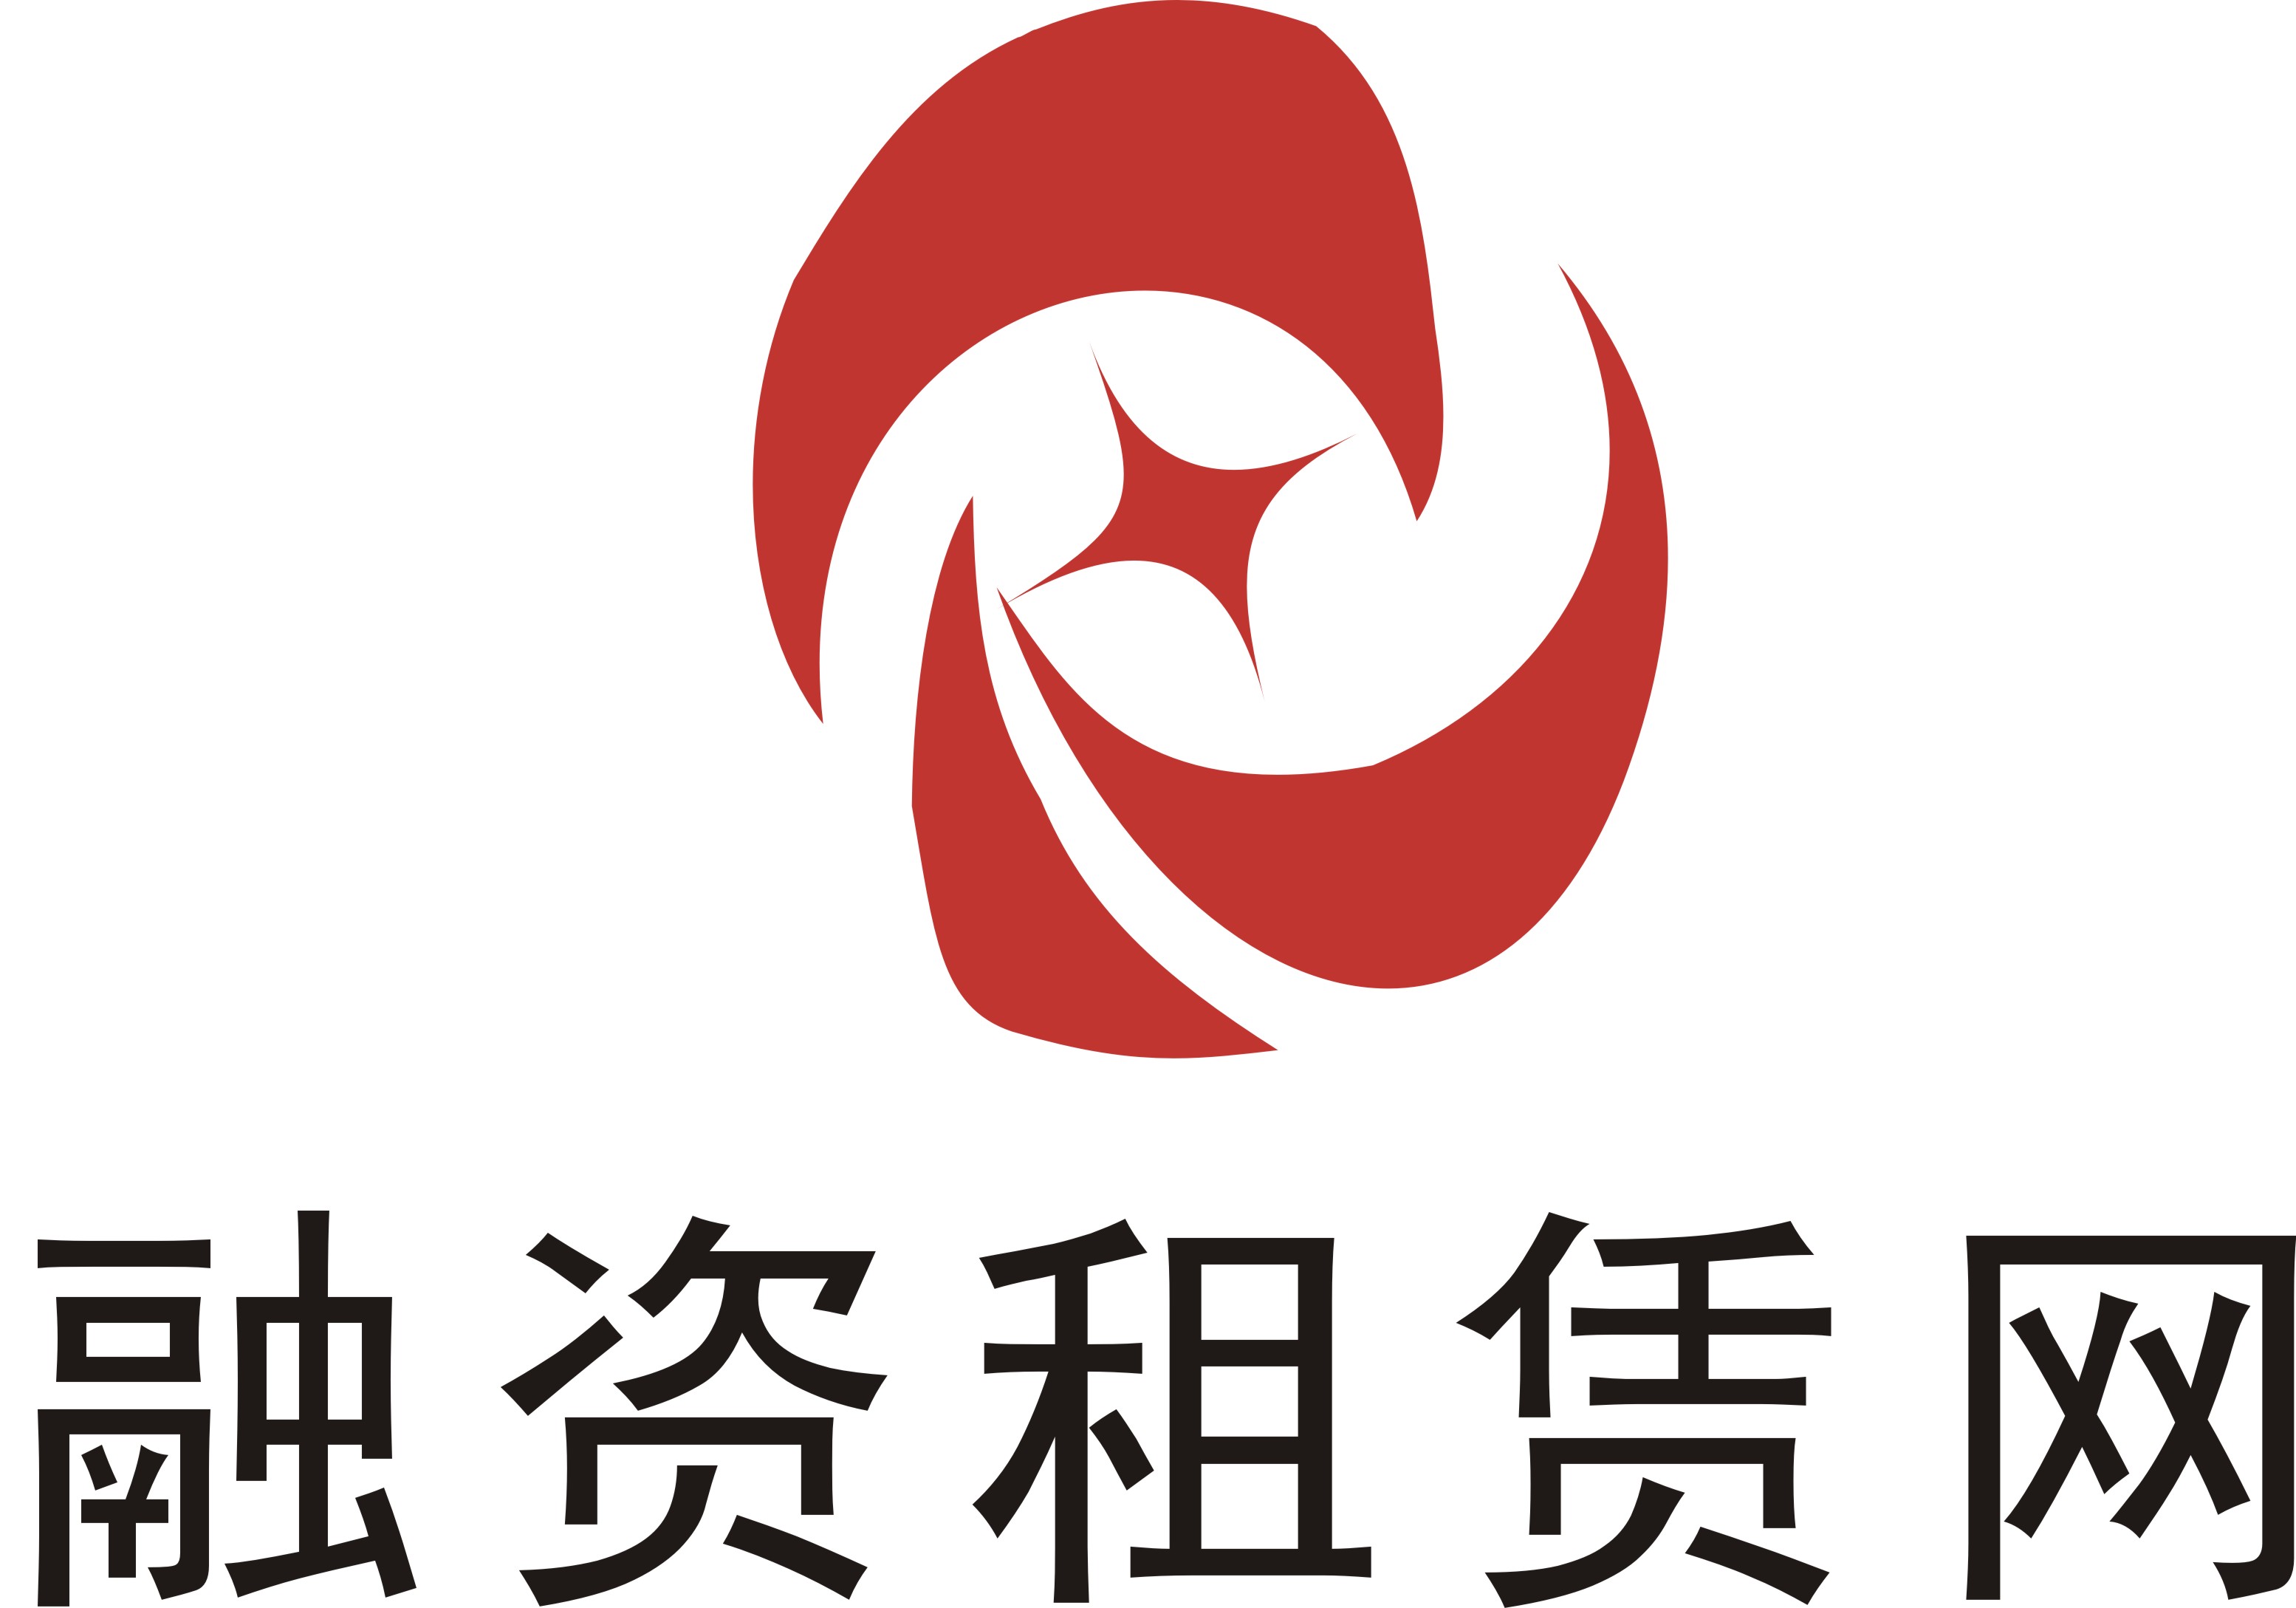 融资租赁logo图片